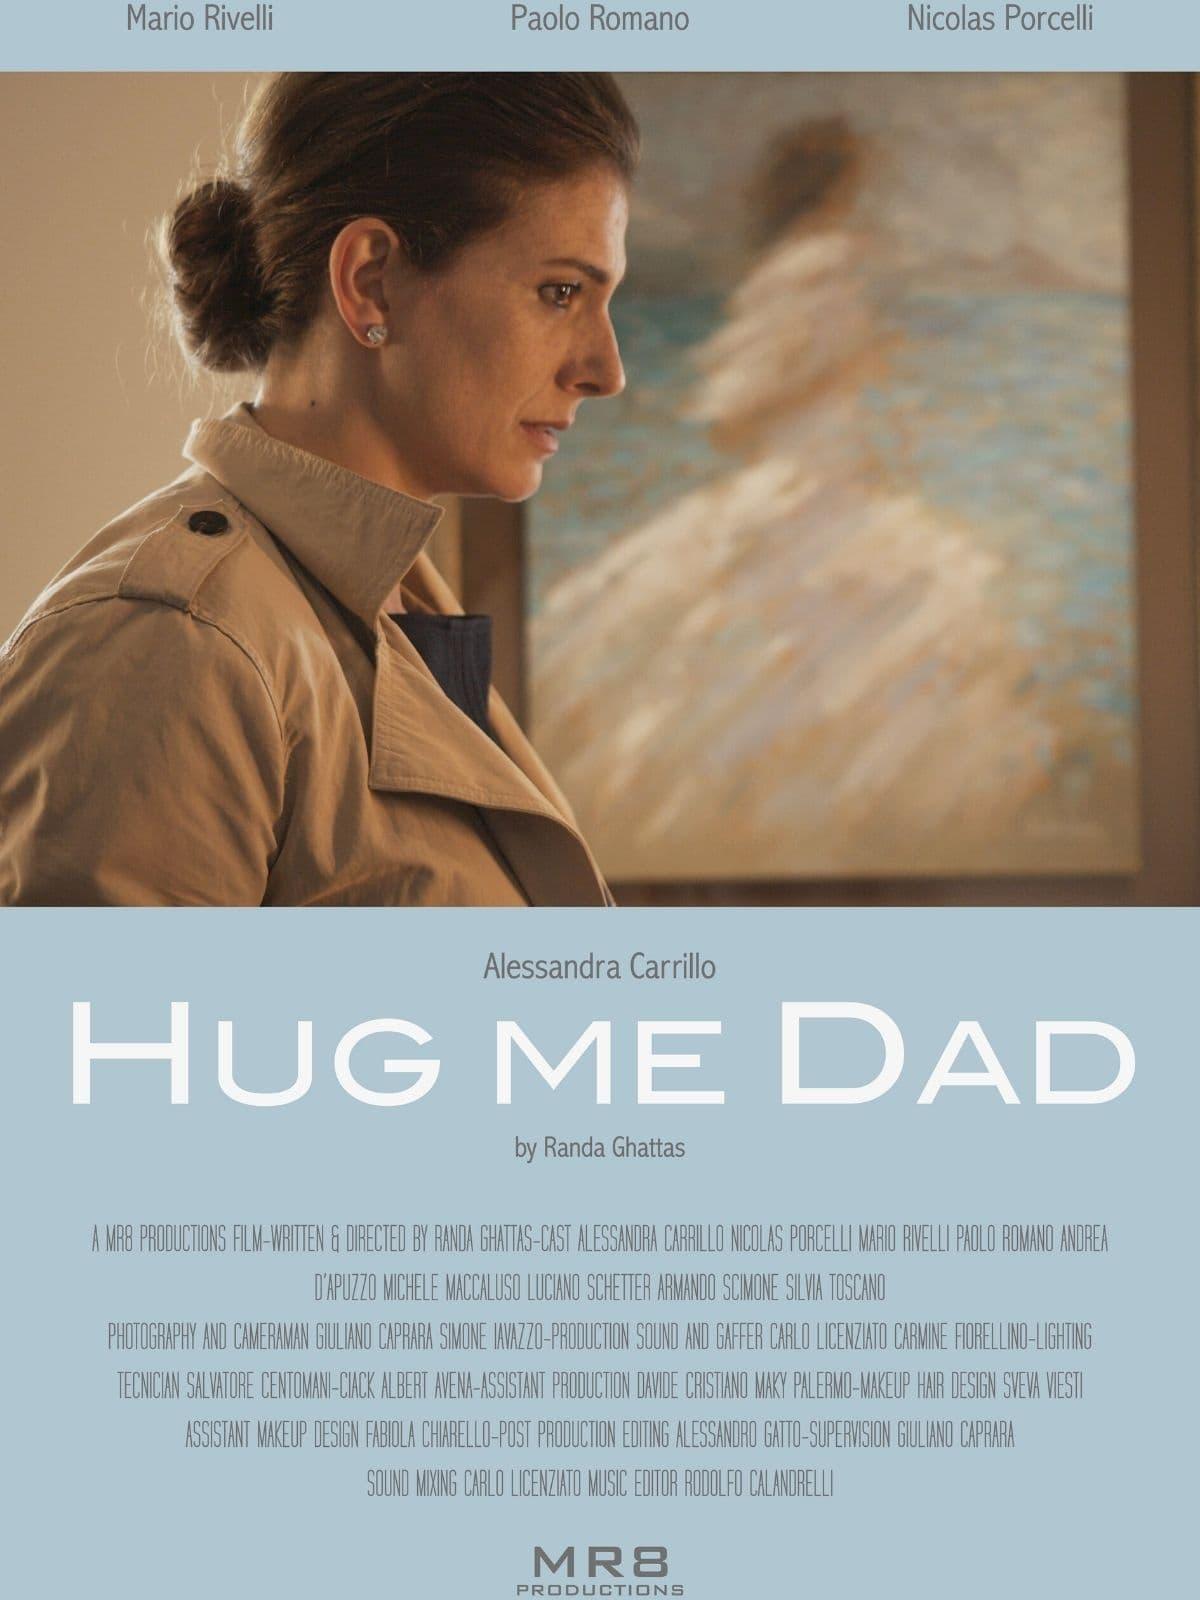 Hug me dad poster